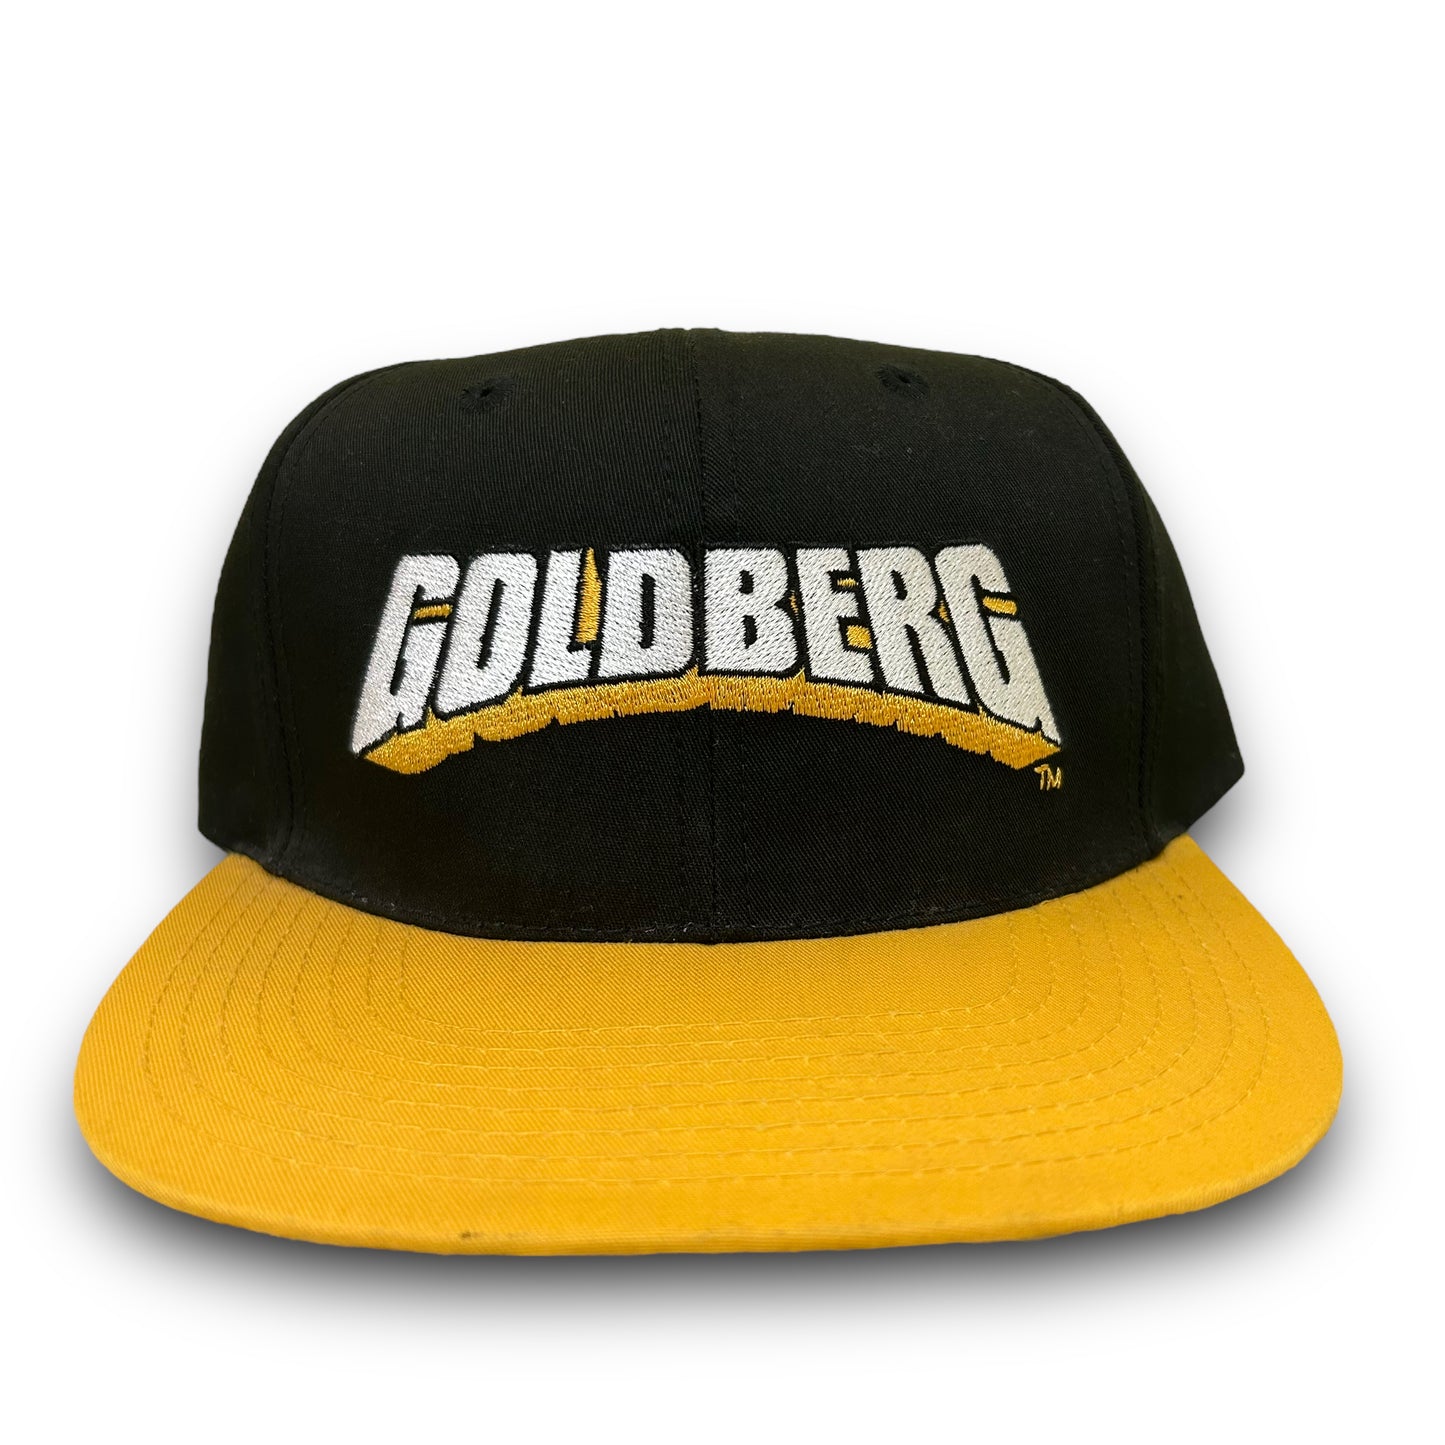 Vintage 1990s WCW/NWO Wrestling Goldberg Embroidered Black Snapback Hat